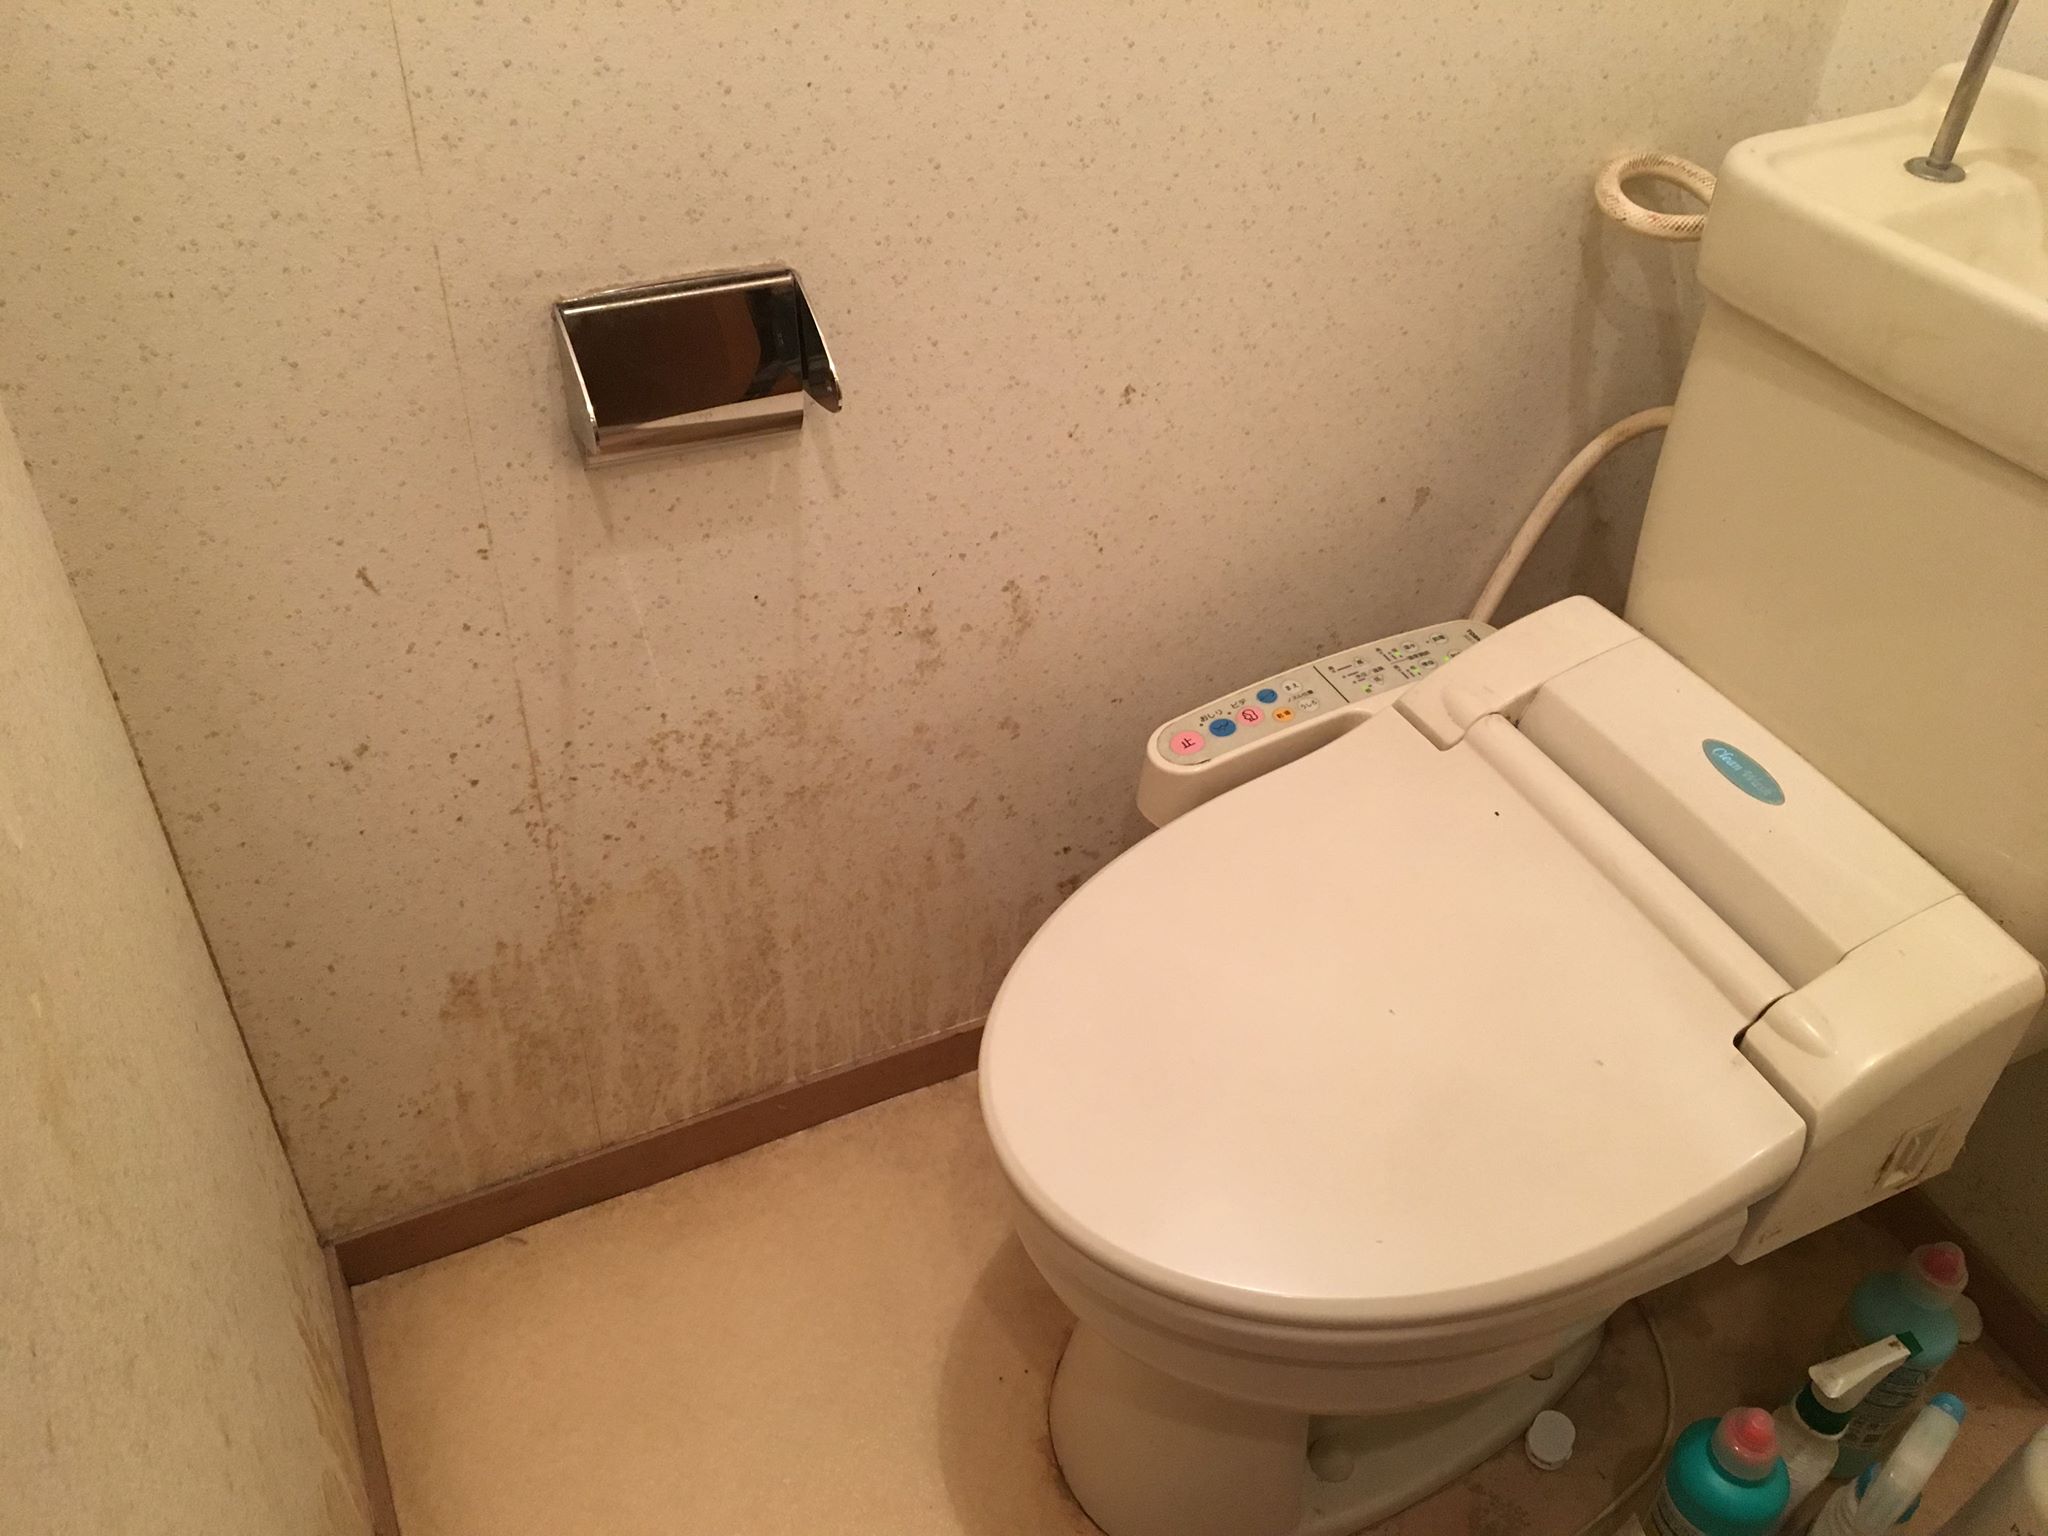 密室キケン トイレの黒カビを除去する方法と注意点 カビペディア ハーツクリーン監修年間0万人がみるカビ取り情報サイト